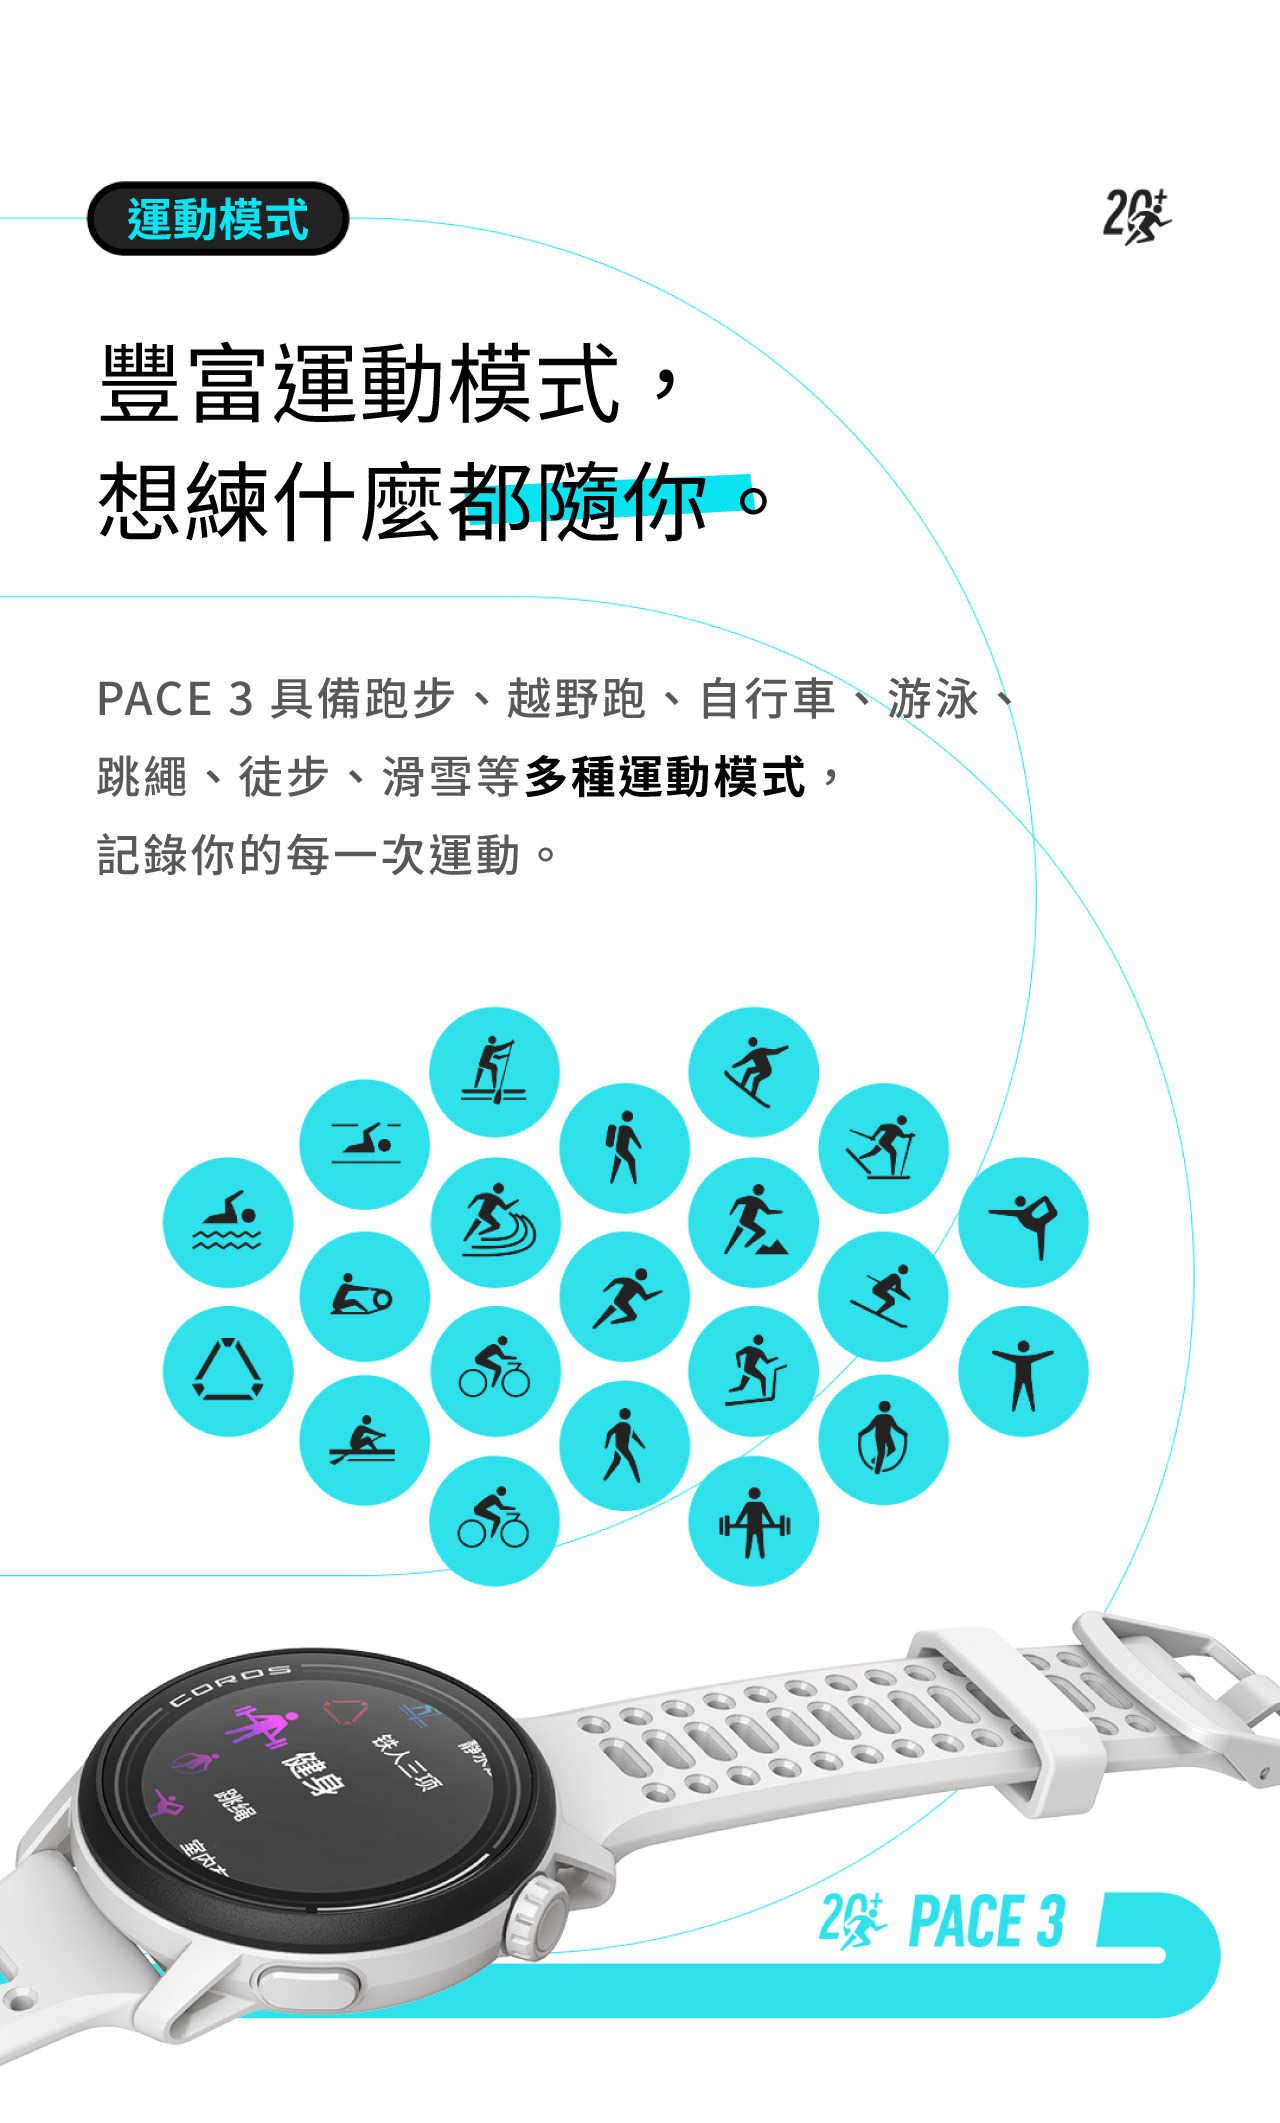 豐富運動模式， 想練什麼都隨你。PACE 3 具備跑步、越野跑、自行車、游泳、 跳繩、徒步、滑雪等多種運動模式， 記錄你的每一次運動。 PACE 3還有血氧檢測(SpO2)功能。